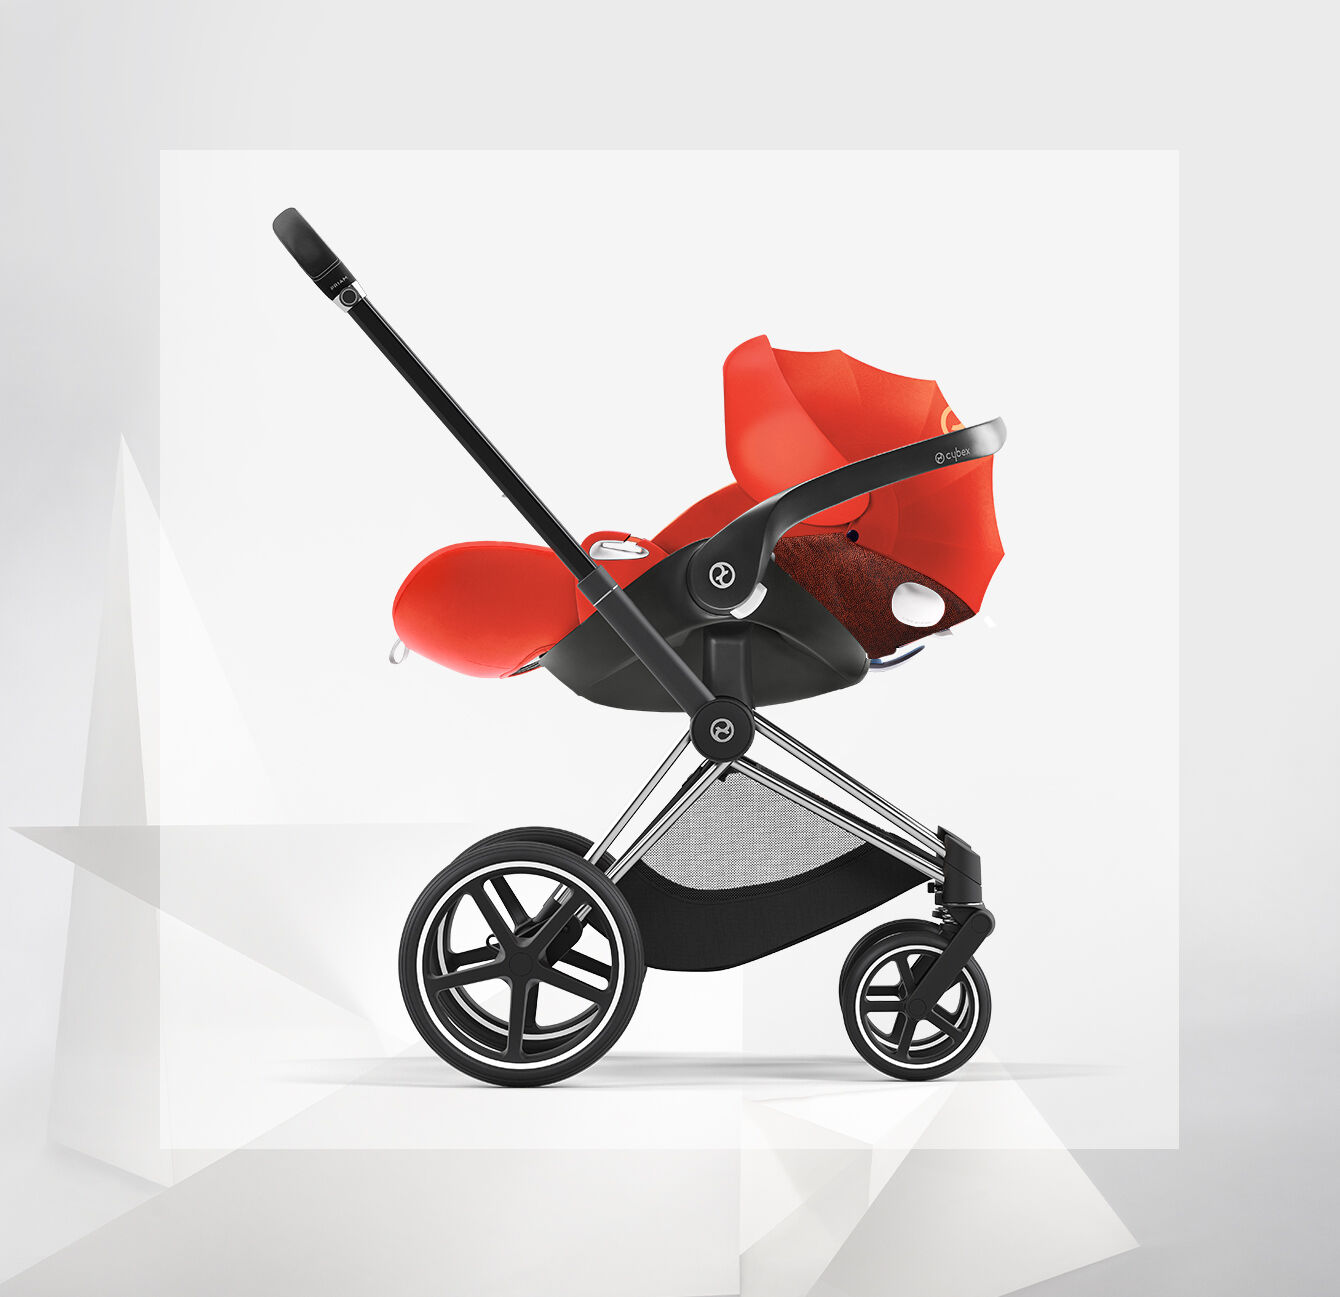 The Cloud Q Infant Car Seat by Cybex Platinum